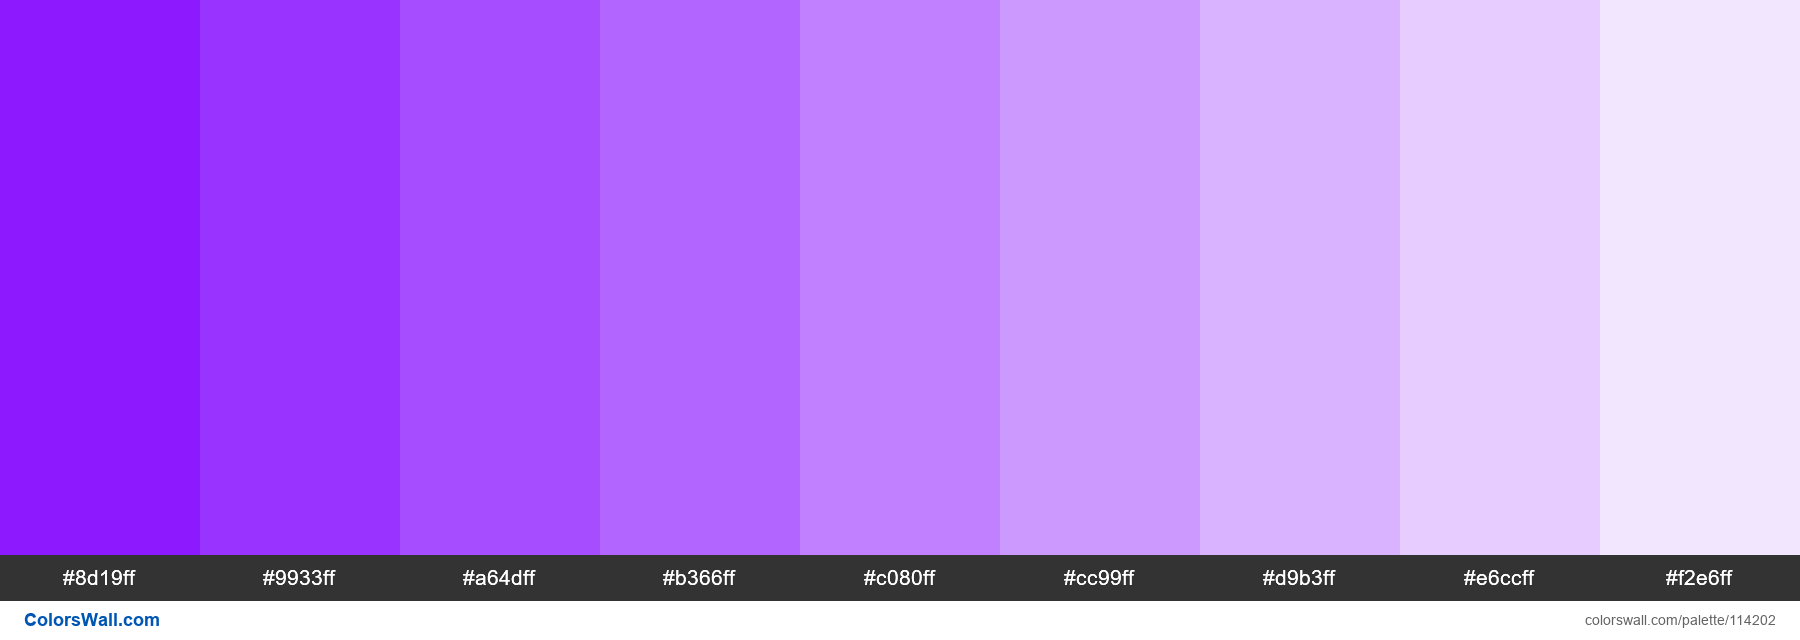 light purple color swatch